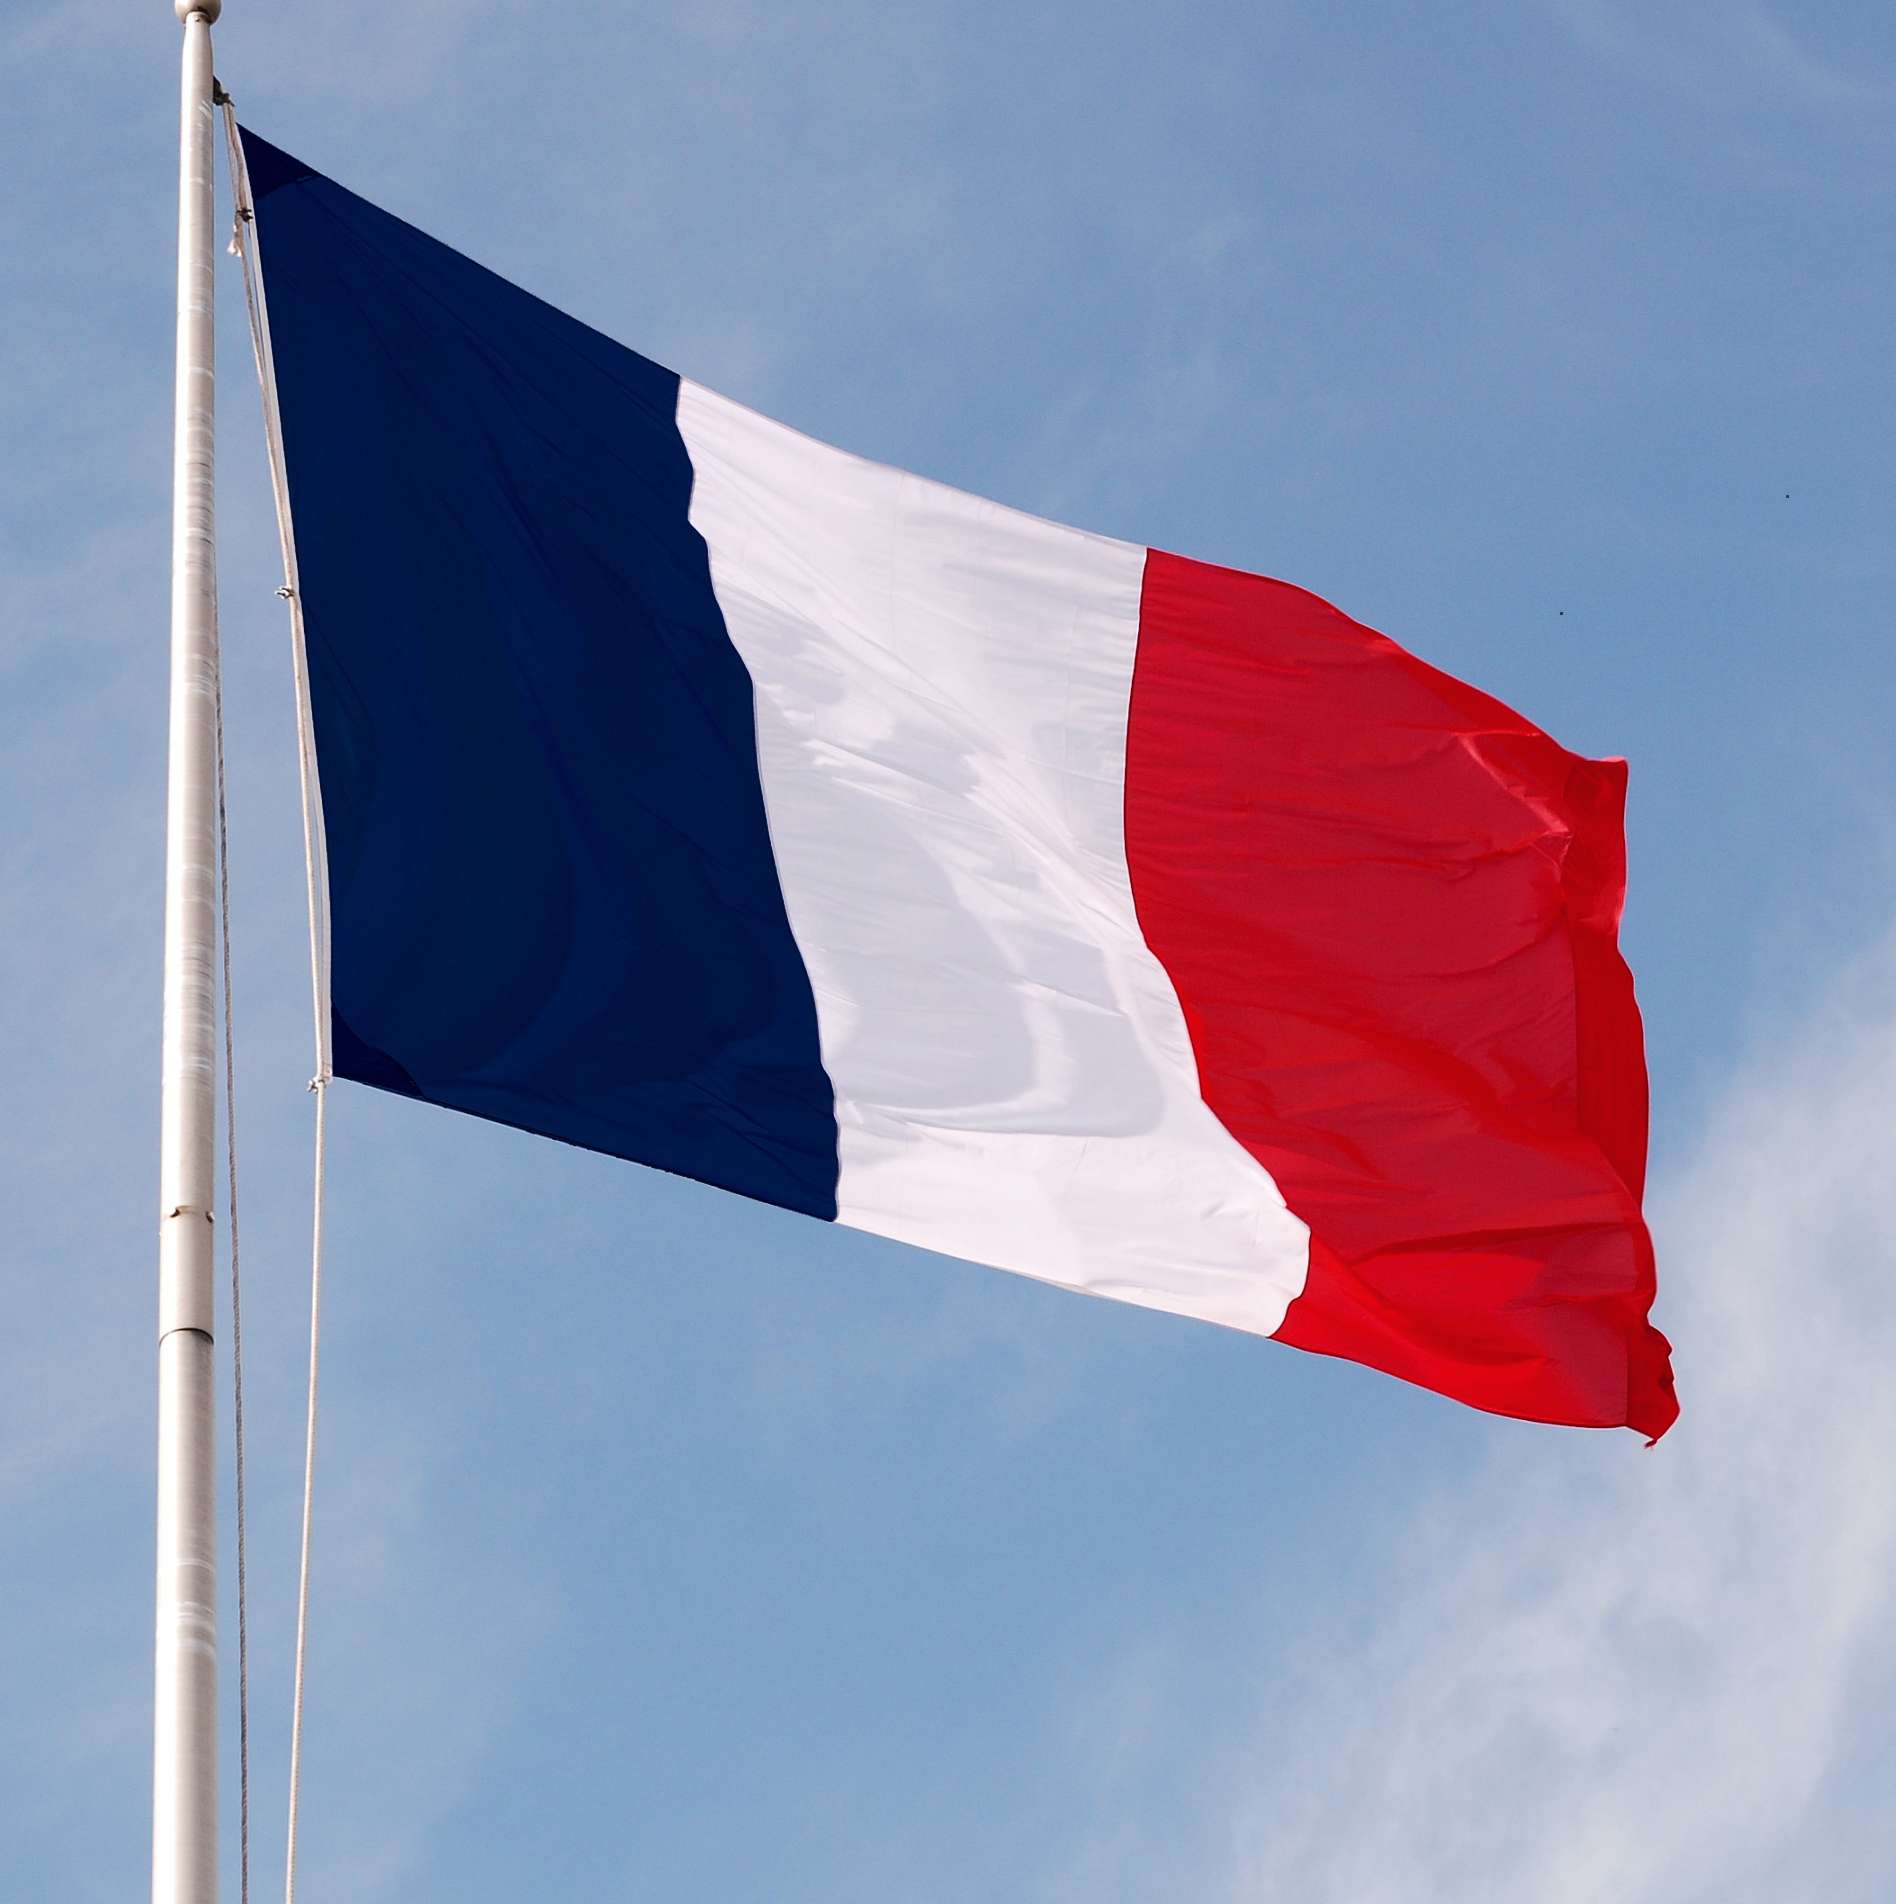 Le 15 février 1794, le jour où la France adopta son drapeau